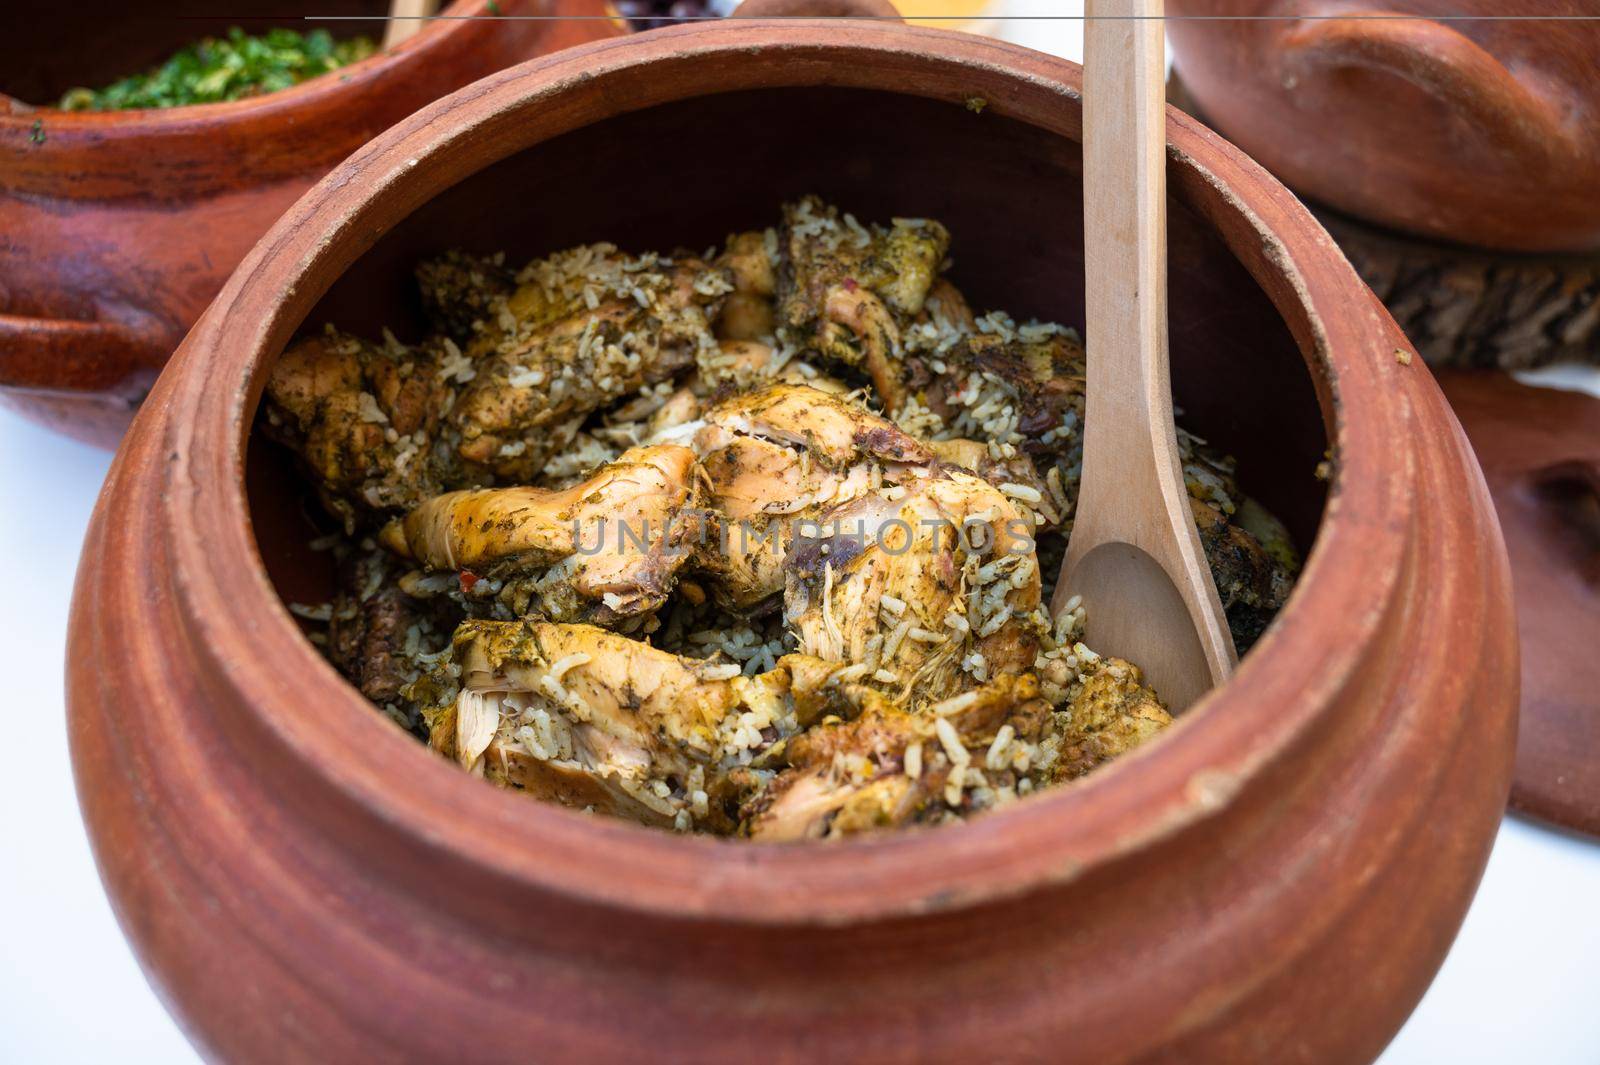 Peruvian cuisine: Chicken and rice called arroz con pollo in a clay pot